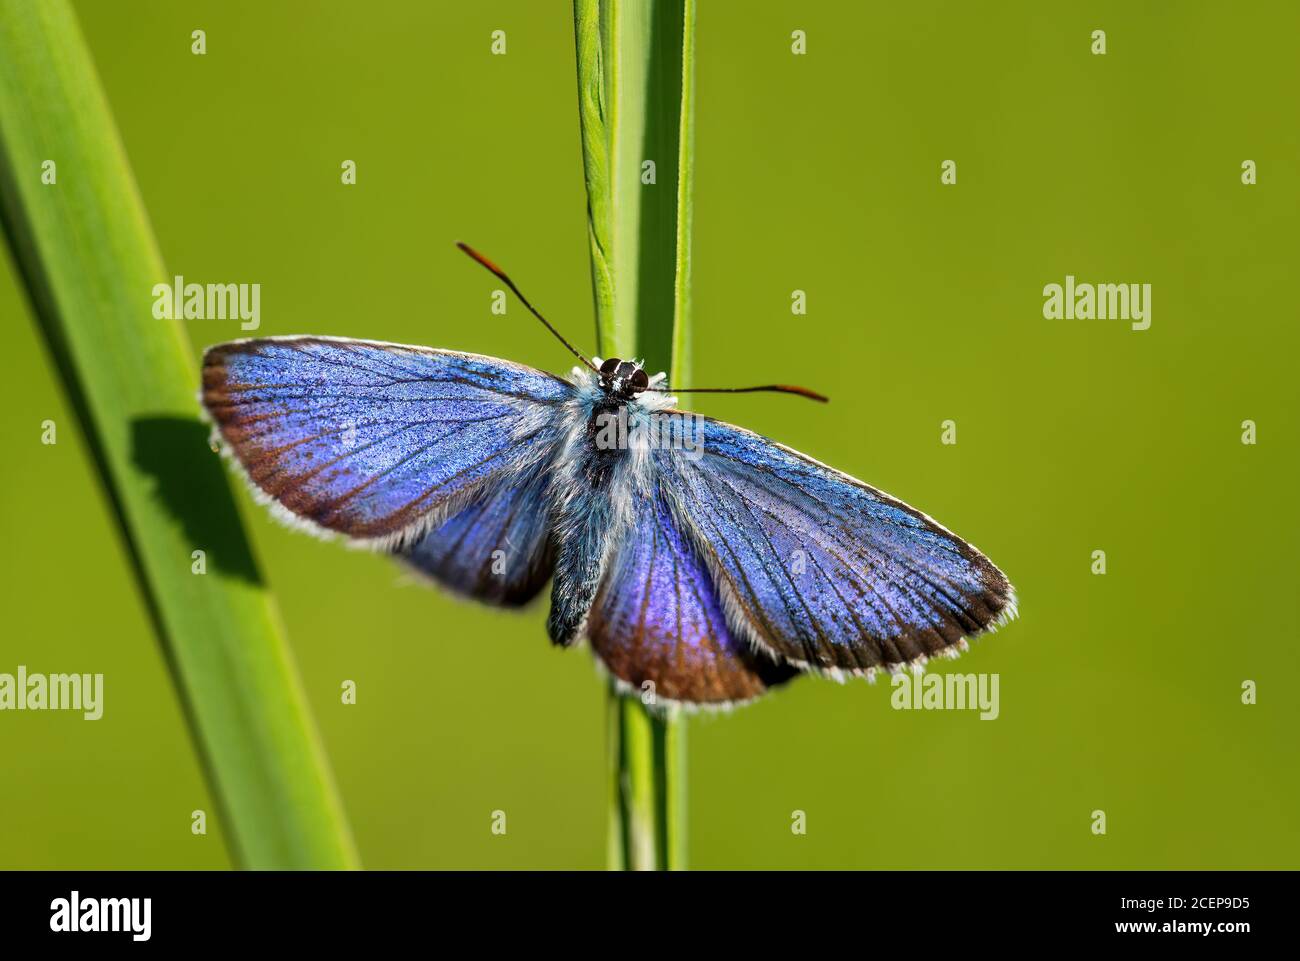 Farfalla blu di Reverdin - Plebejus argirognomon, bella piccola farfalla blu da prati e praterie europee, Zlin, Repubblica Ceca. Foto Stock